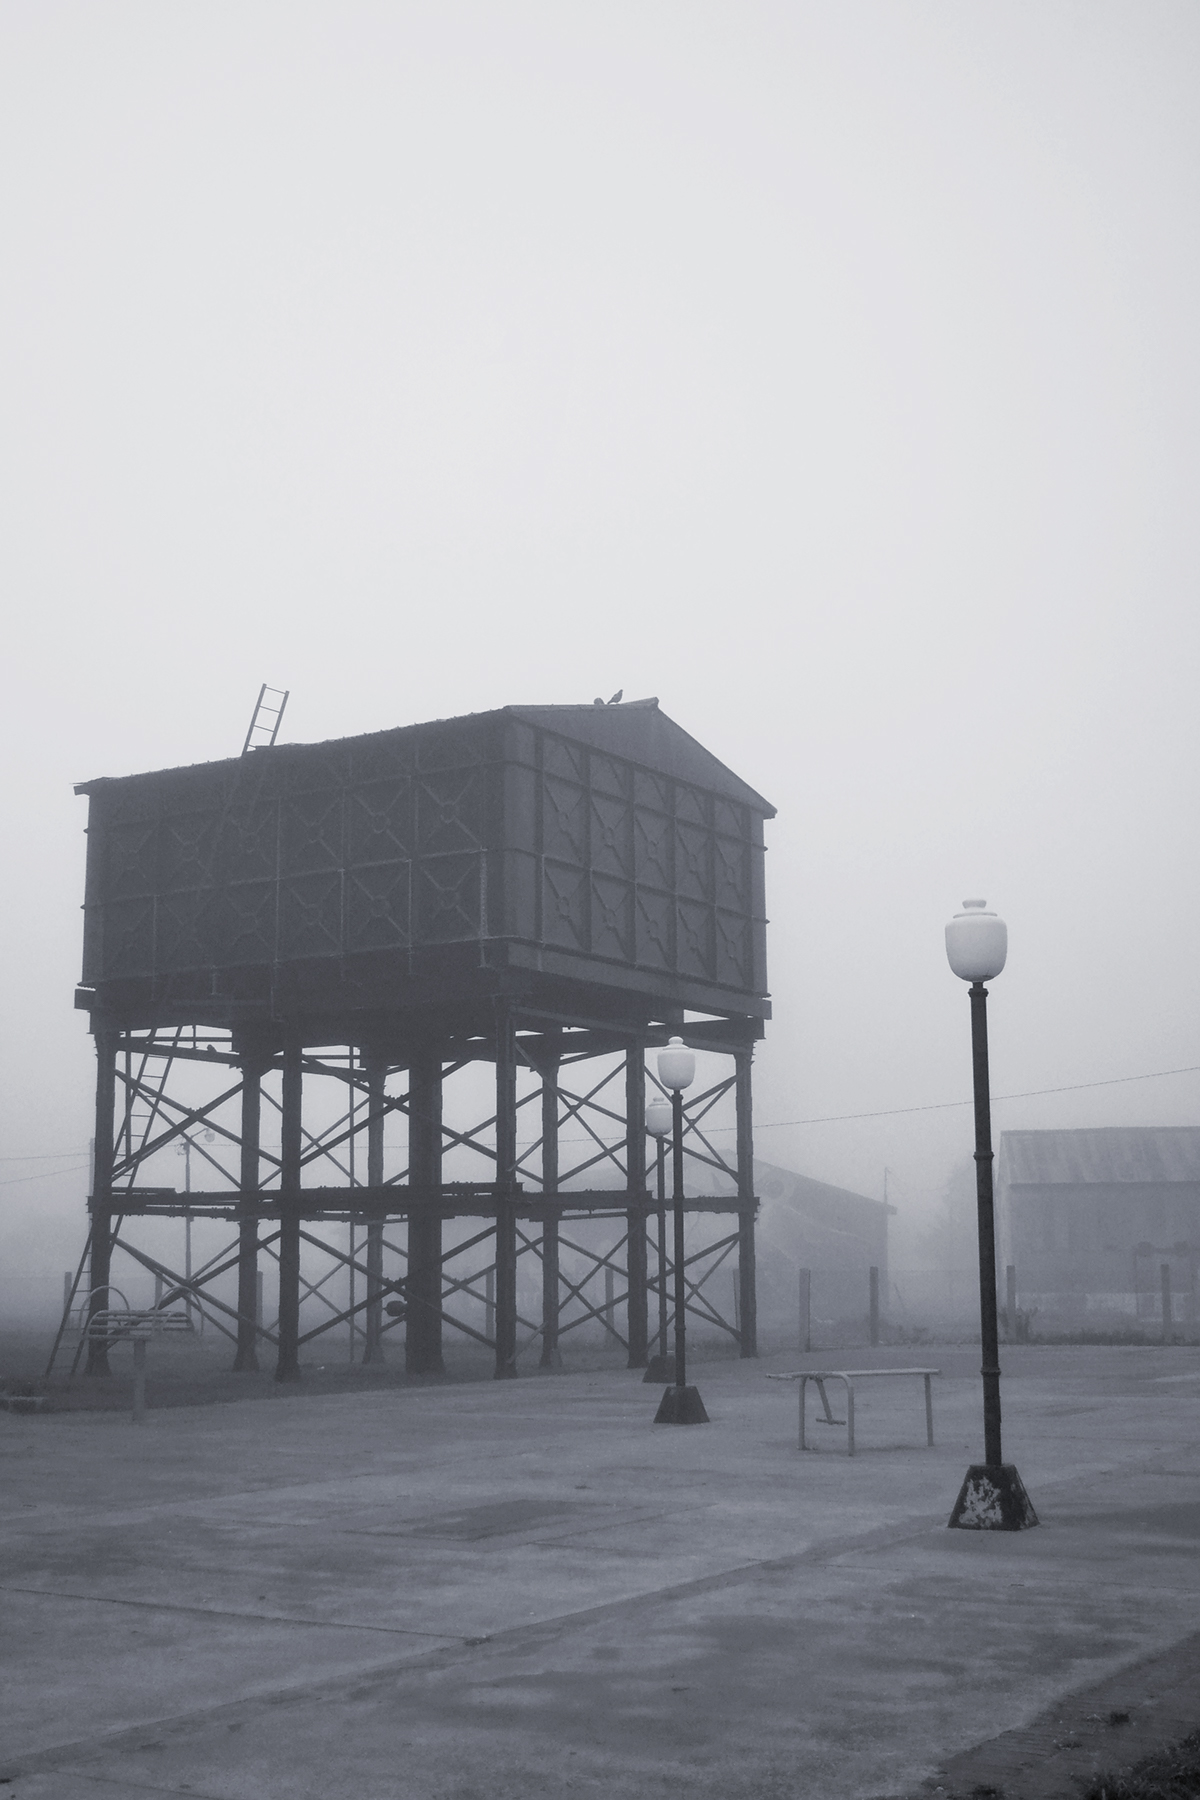 cuidad niebla bruma tren vias silos blanco y negro argentina monumento foto